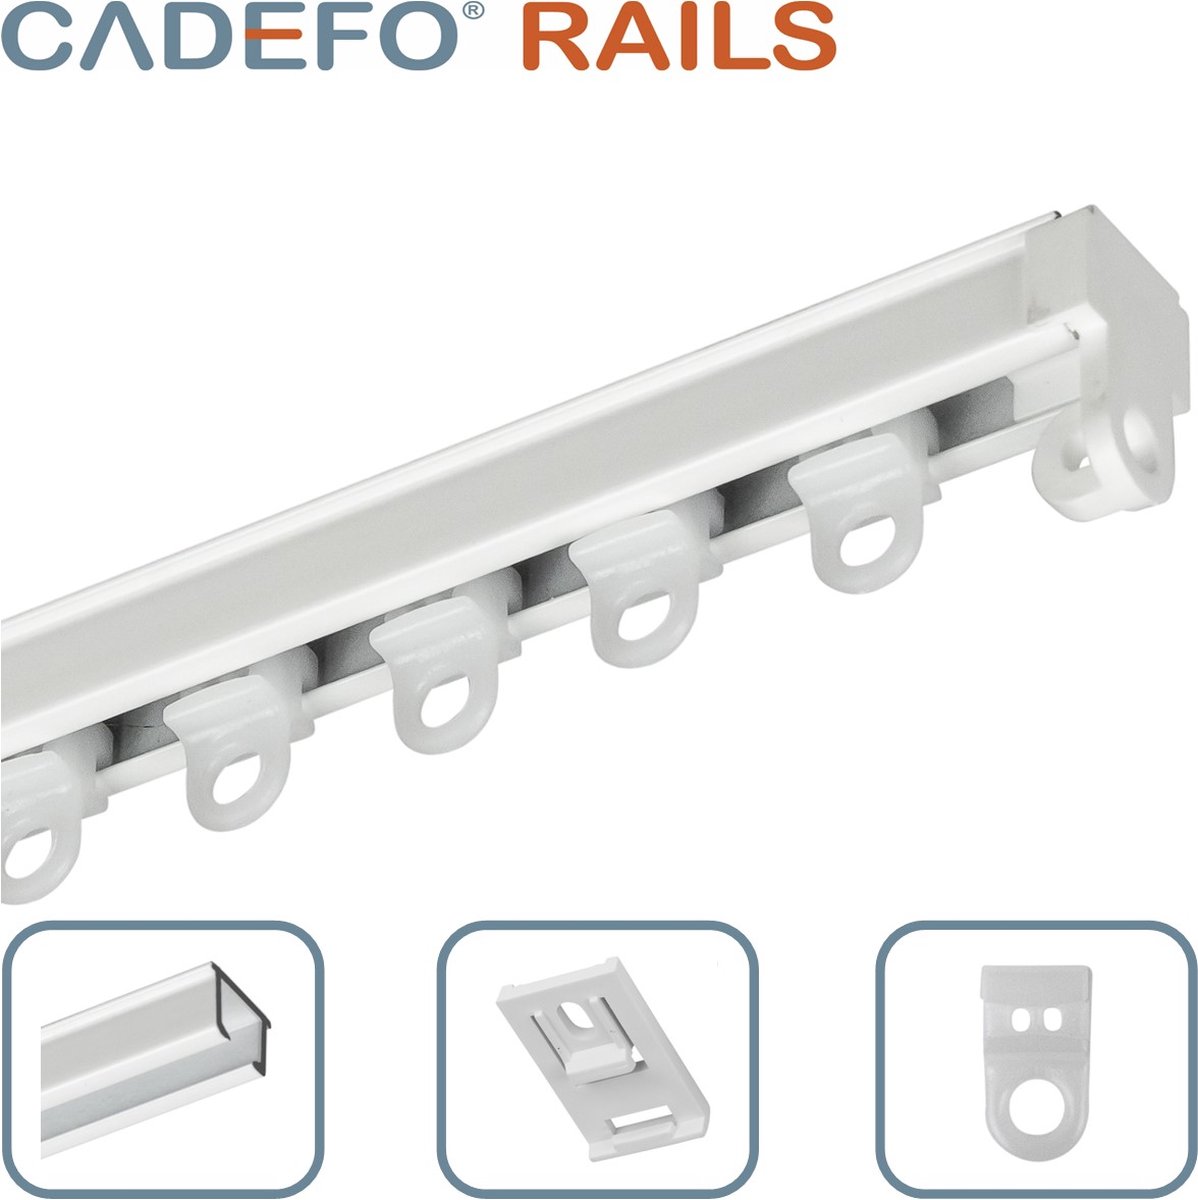 CADEFO RAILS (501 - 550 cm) Gordijnrails - Compleet op maat! - UIT 1 STUK - Leverbaar tot 6 meter - Plafondbevestiging - Lengte 527 cm